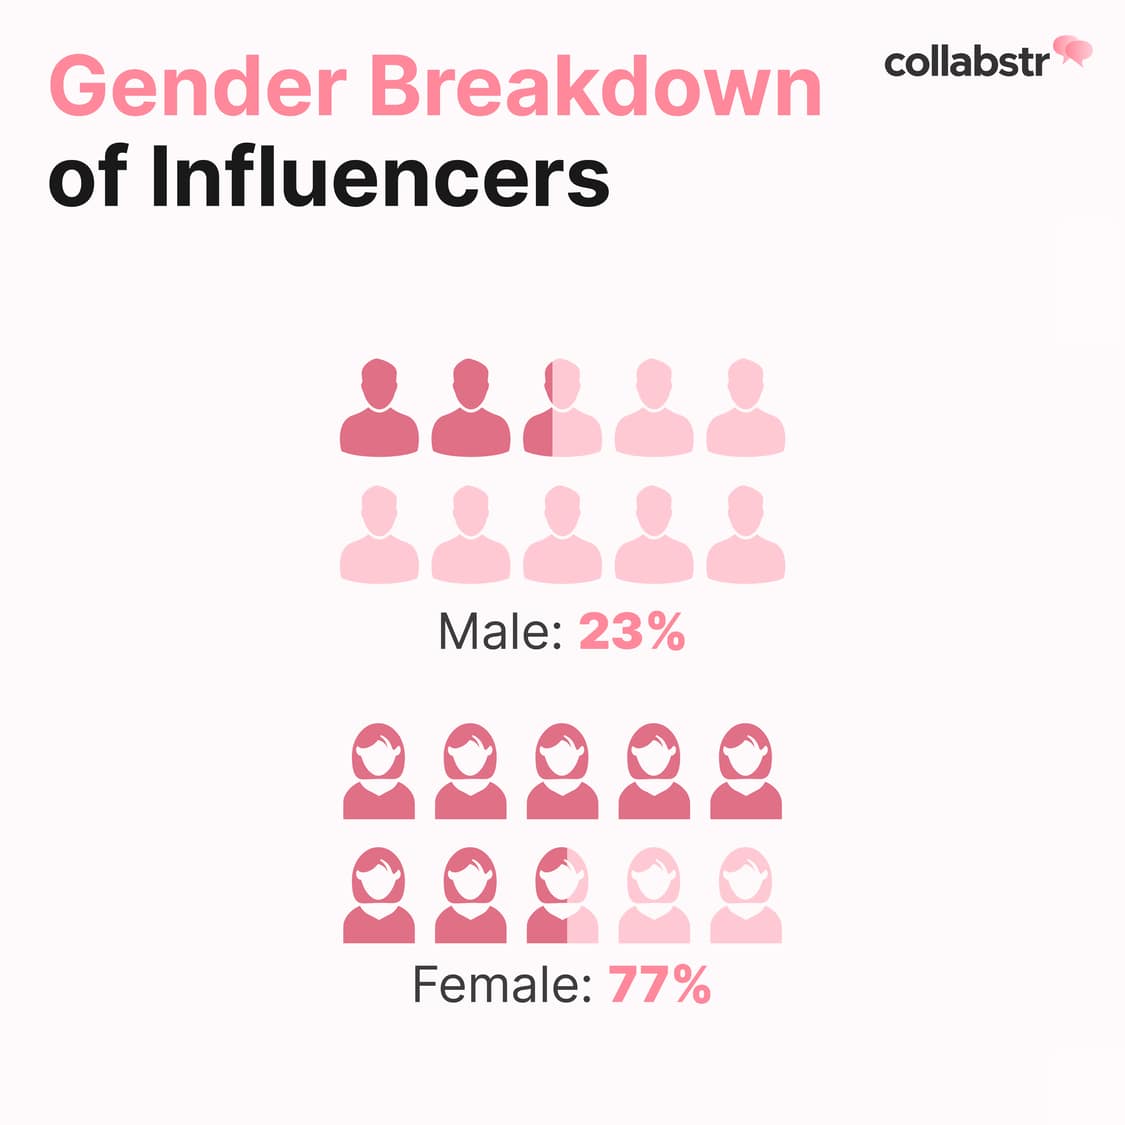 Gender breakdown of influencers.